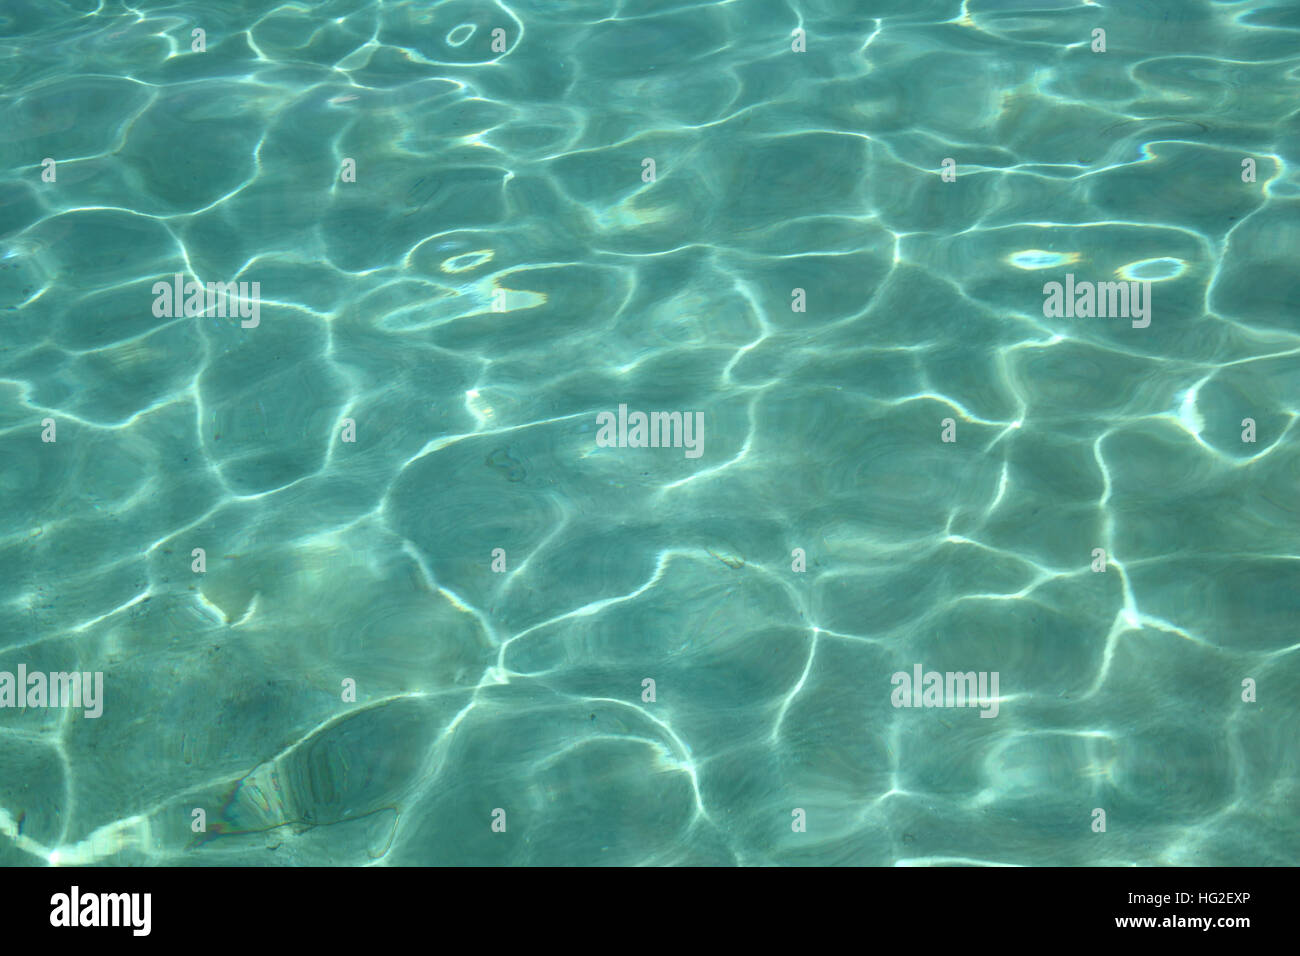 L'eau bleu turquoise tropical avec la lumière réfléchie sur le sable au fond de l'océan, des Caraïbes. Banque D'Images